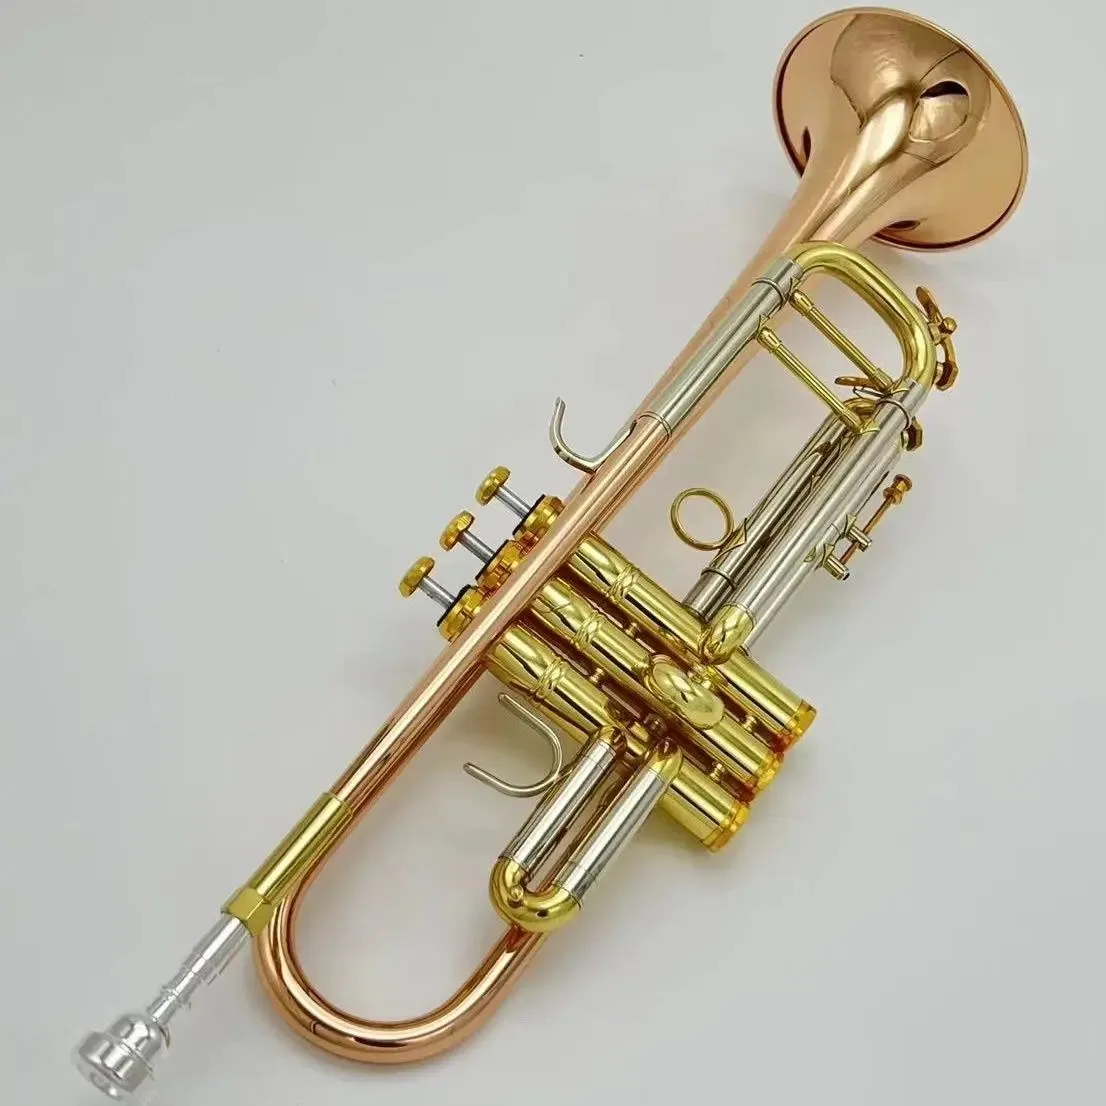 アメリカのブランドダブルスケール銅トランペット表面金メッキBキープロフェッショナルトランペットオリジナル3トーンホーン楽器